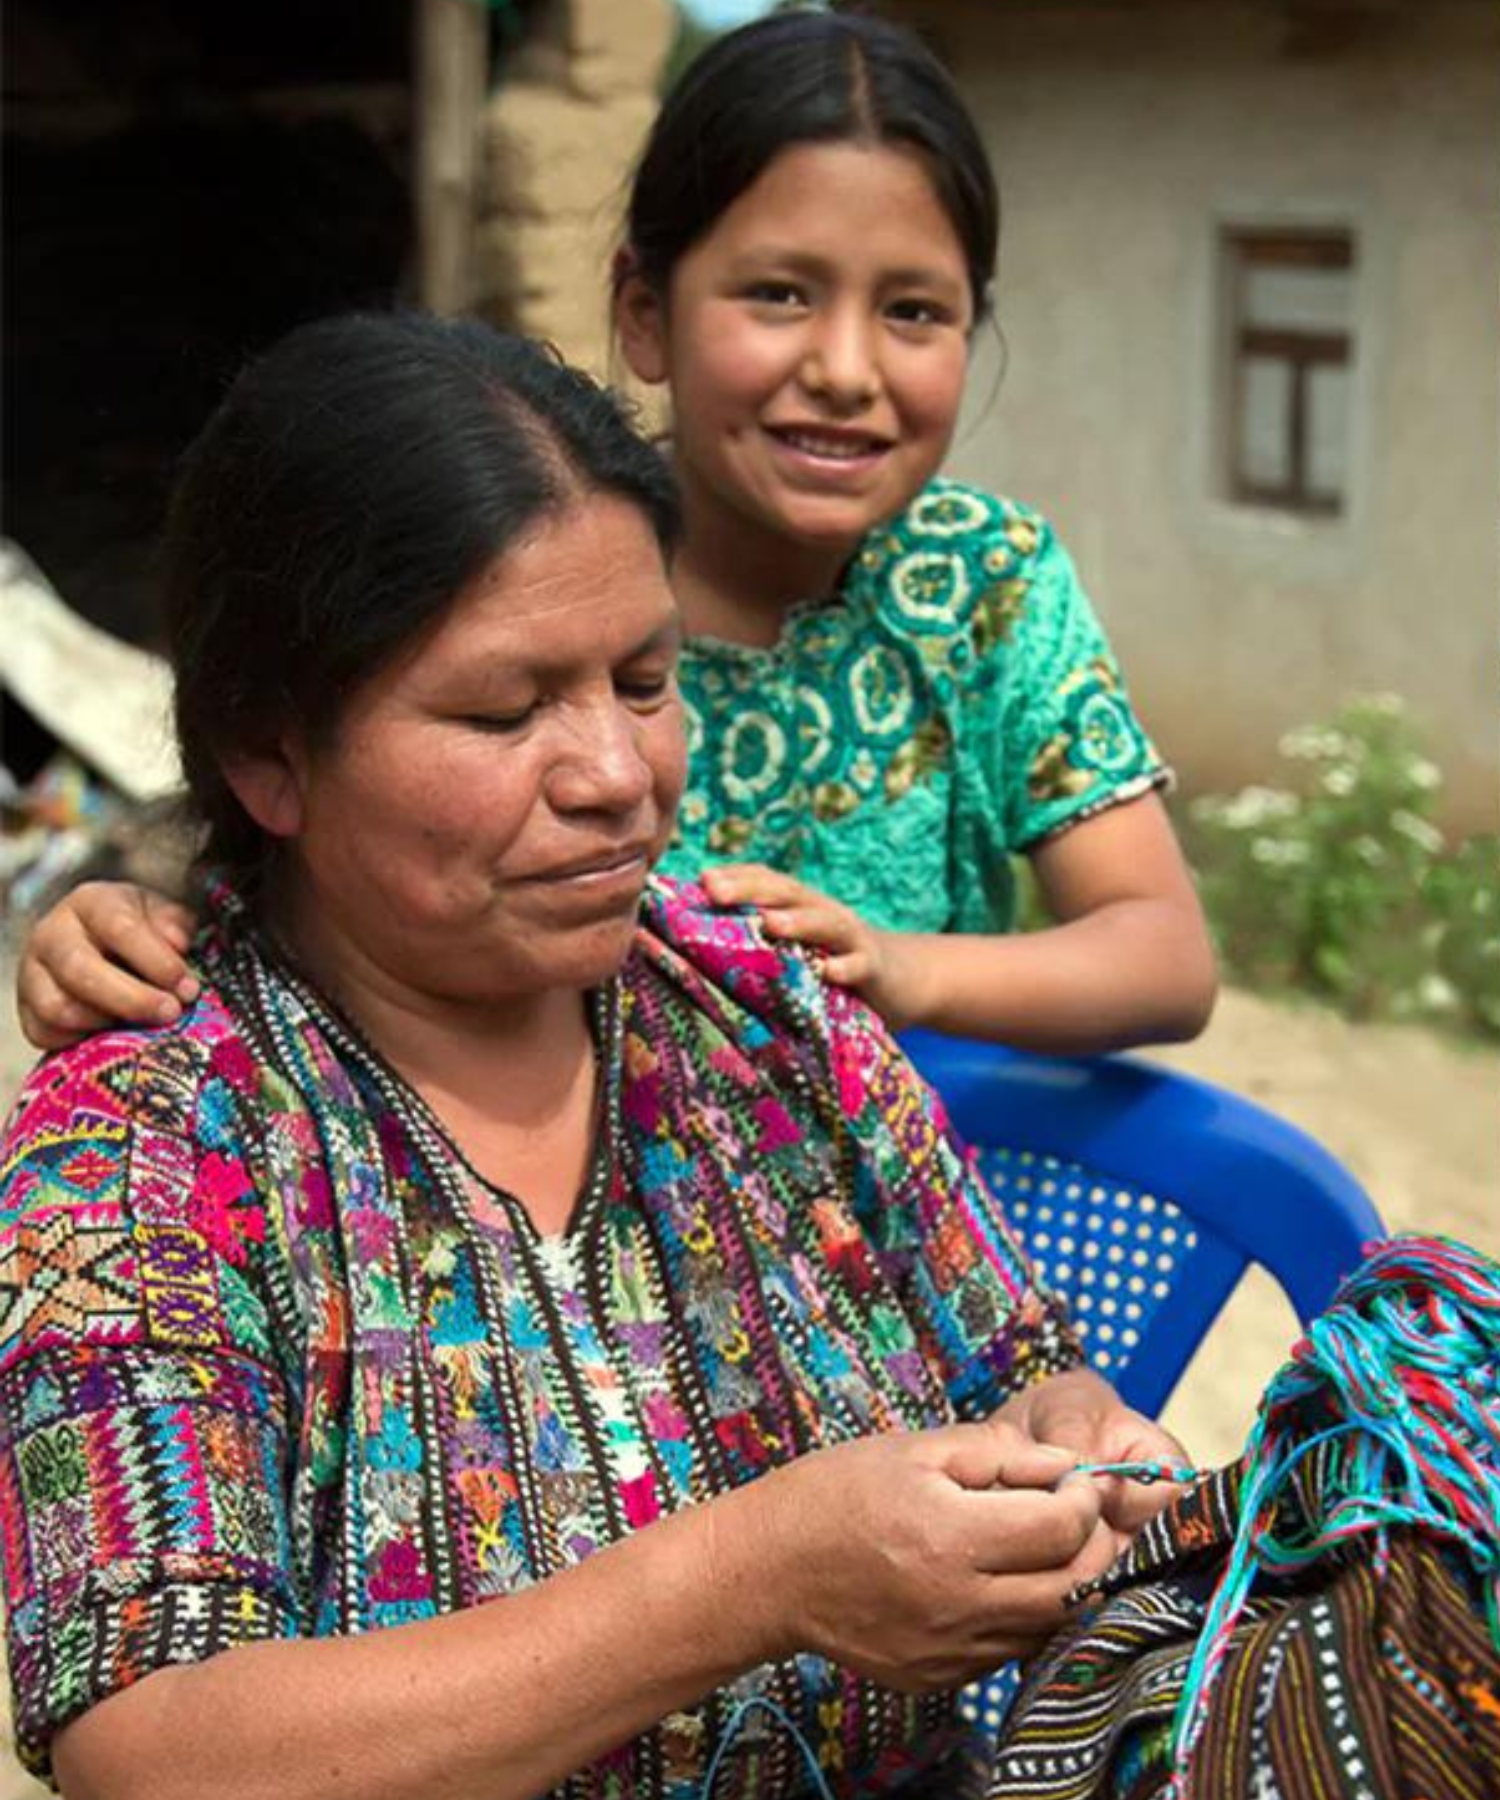 Fair Trade Friendship Bracelet Fundraising - Mayan Hands